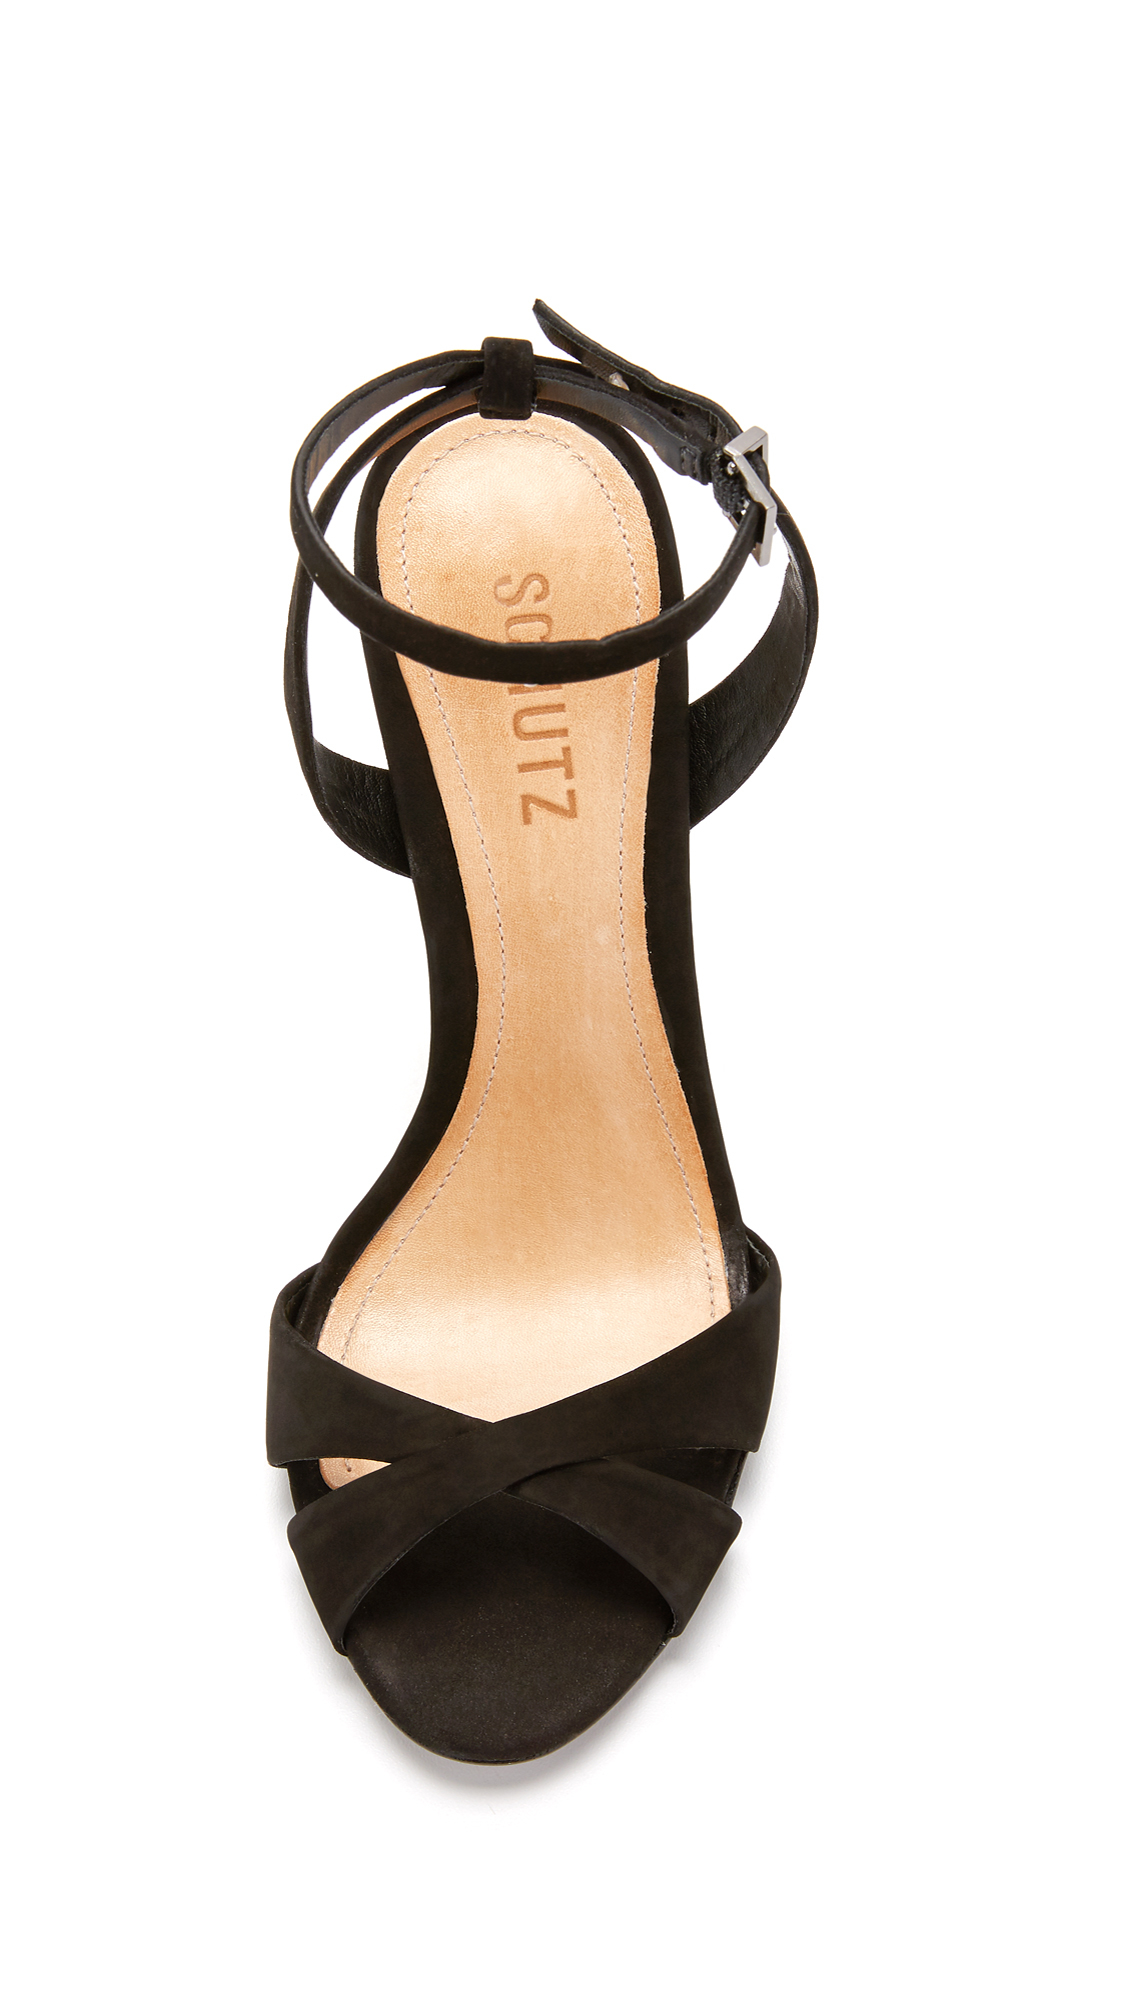 Schutz Leather Dollie Sandals in Black - Lyst